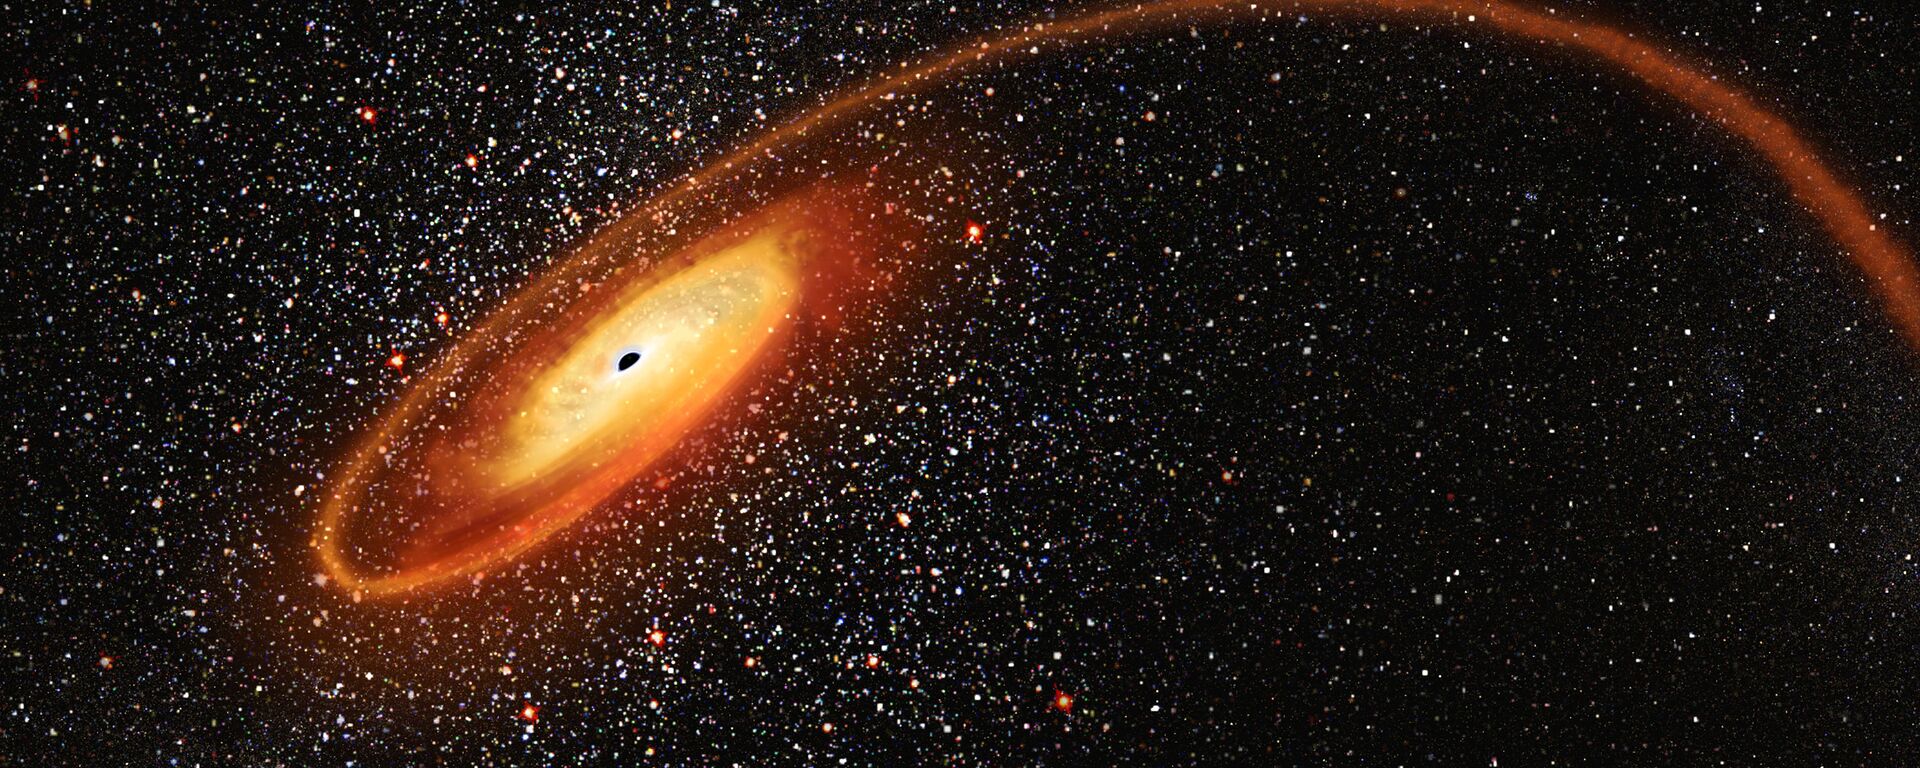 ثقب أسود يلتهم نجم - سبوتنيك عربي, 1920, 30.06.2021